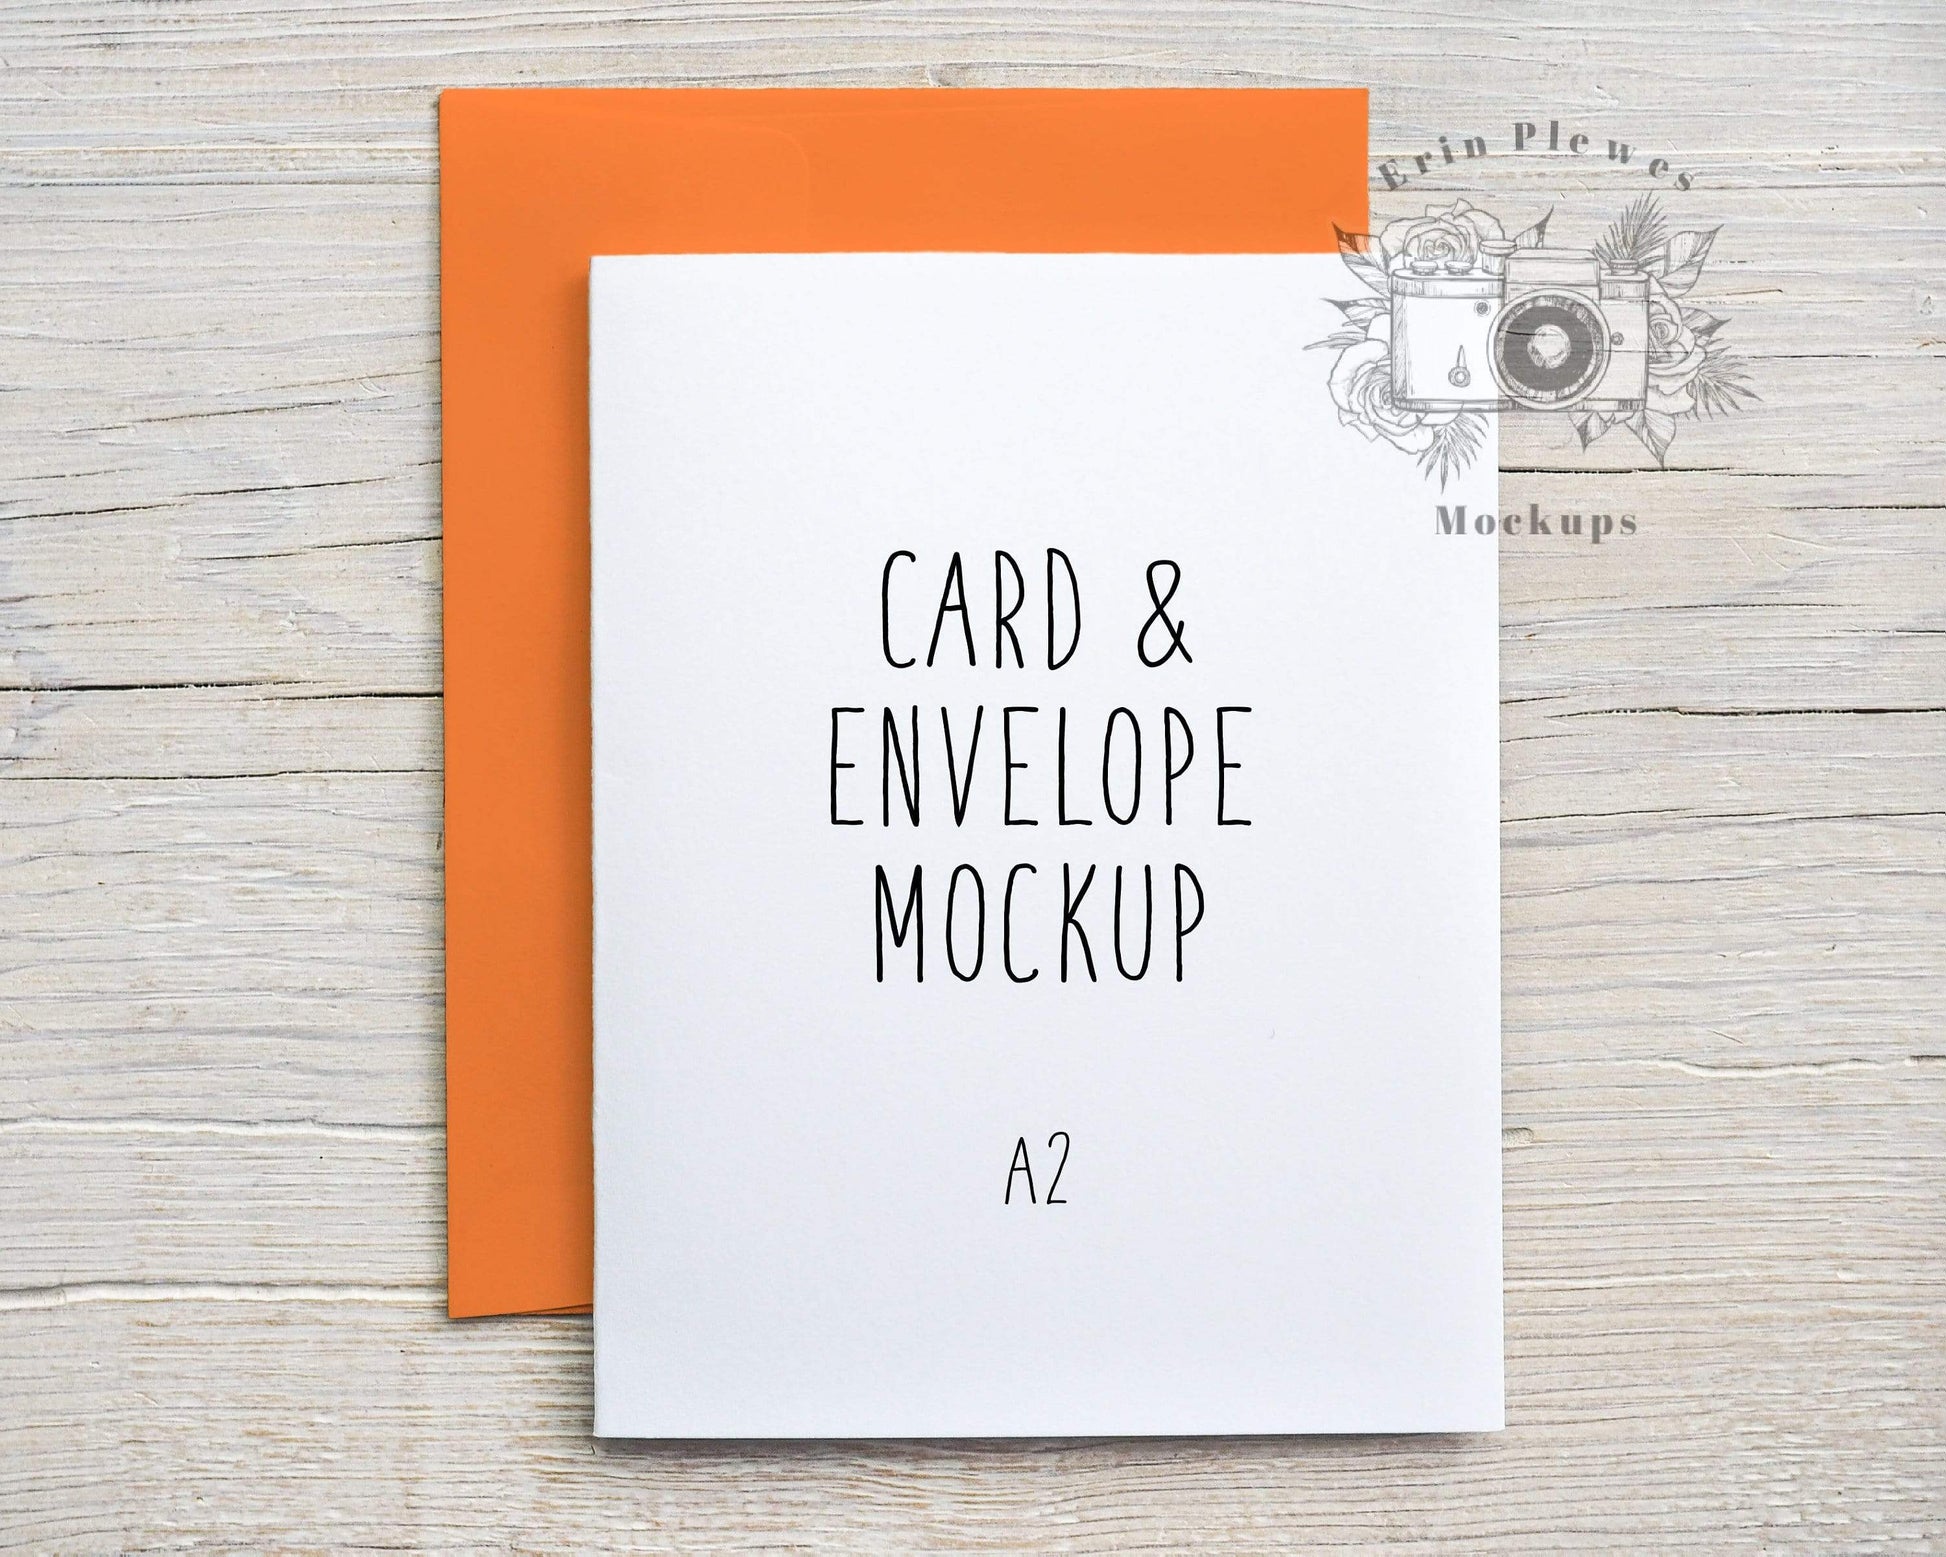 Erin Plewes Mockups A2 Card mockup with bright orange envelope, Thank you card mock up vertical, Birthday card envelope mock-up, Jpeg Instant Digital Download